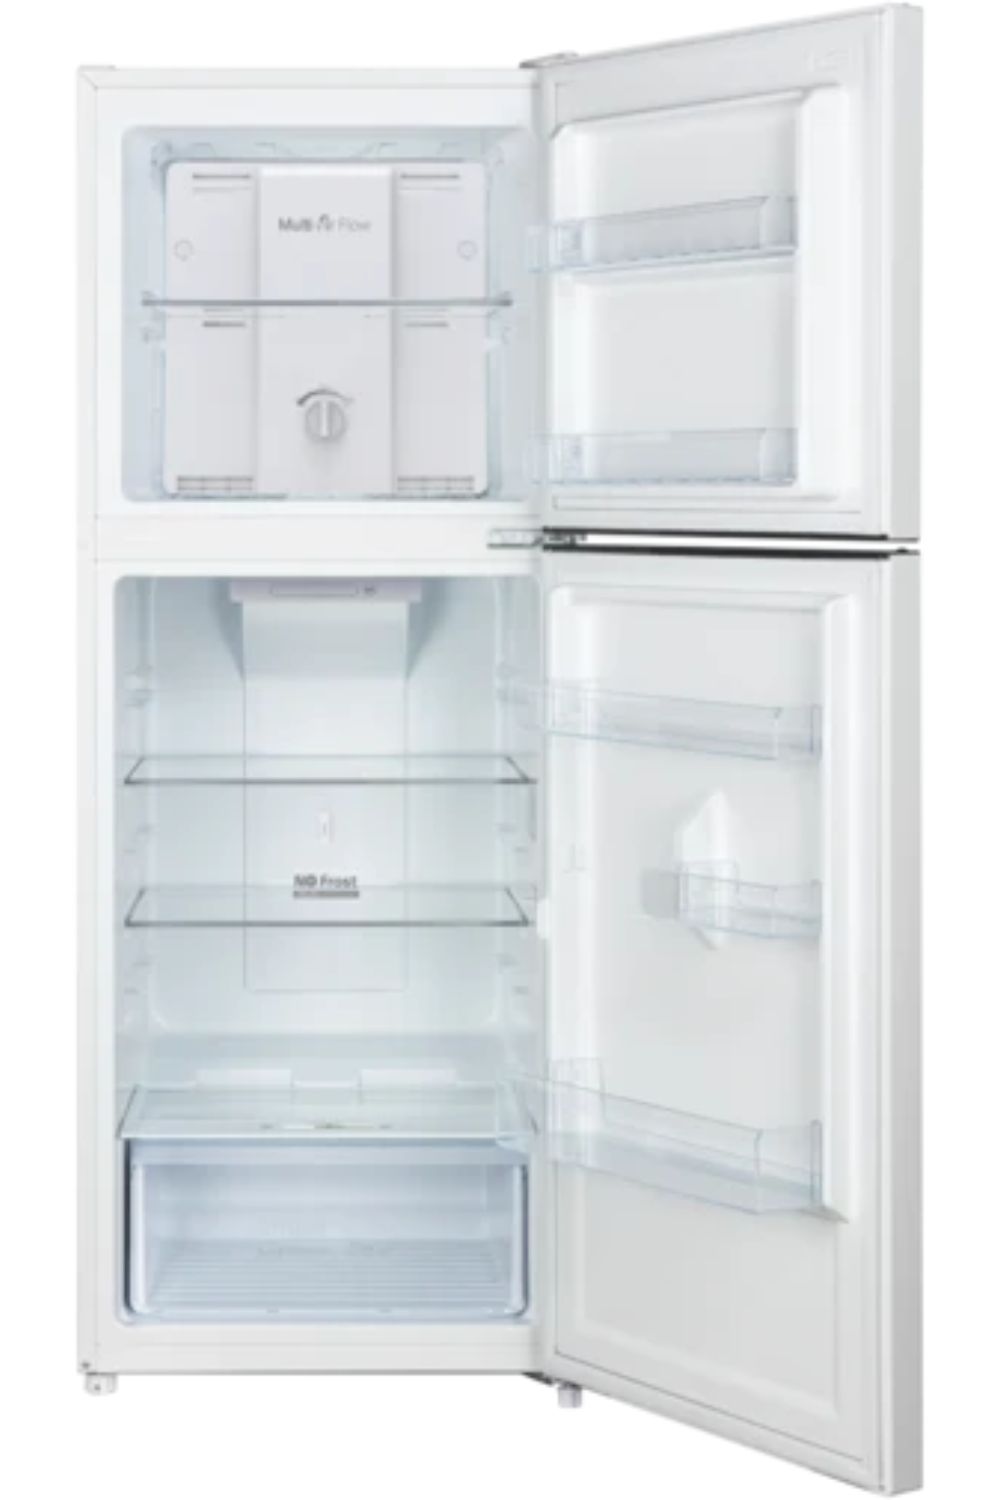 best-cheap-fridges